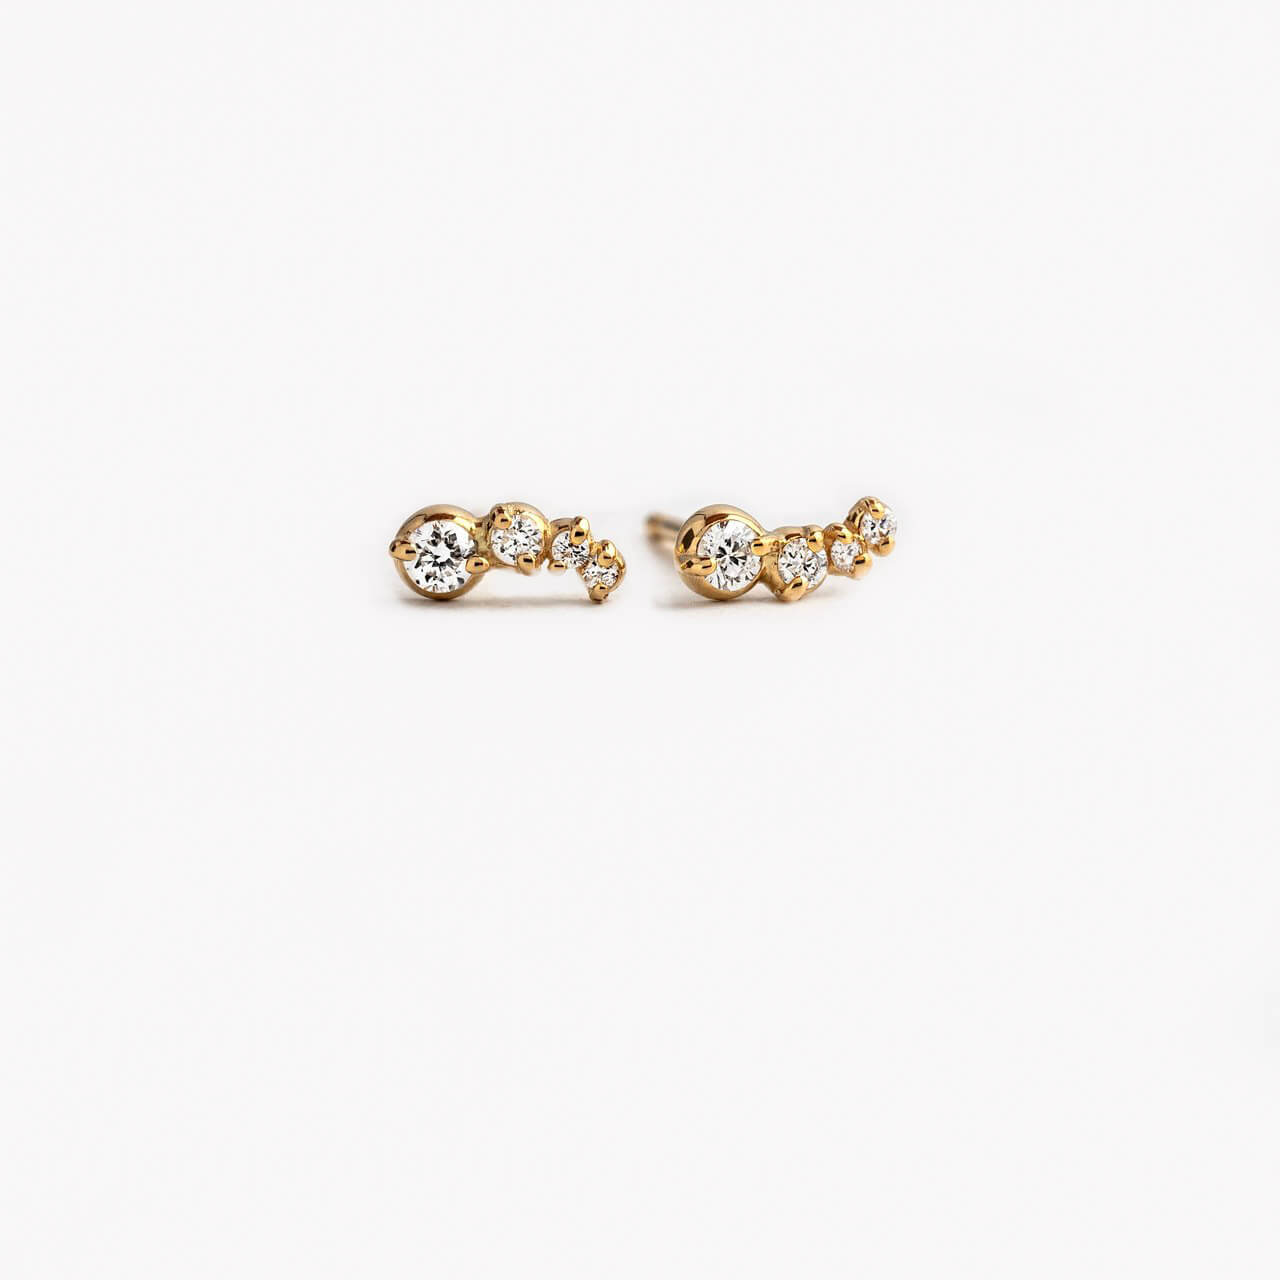 Cluster Earrings, 9-18K Gold